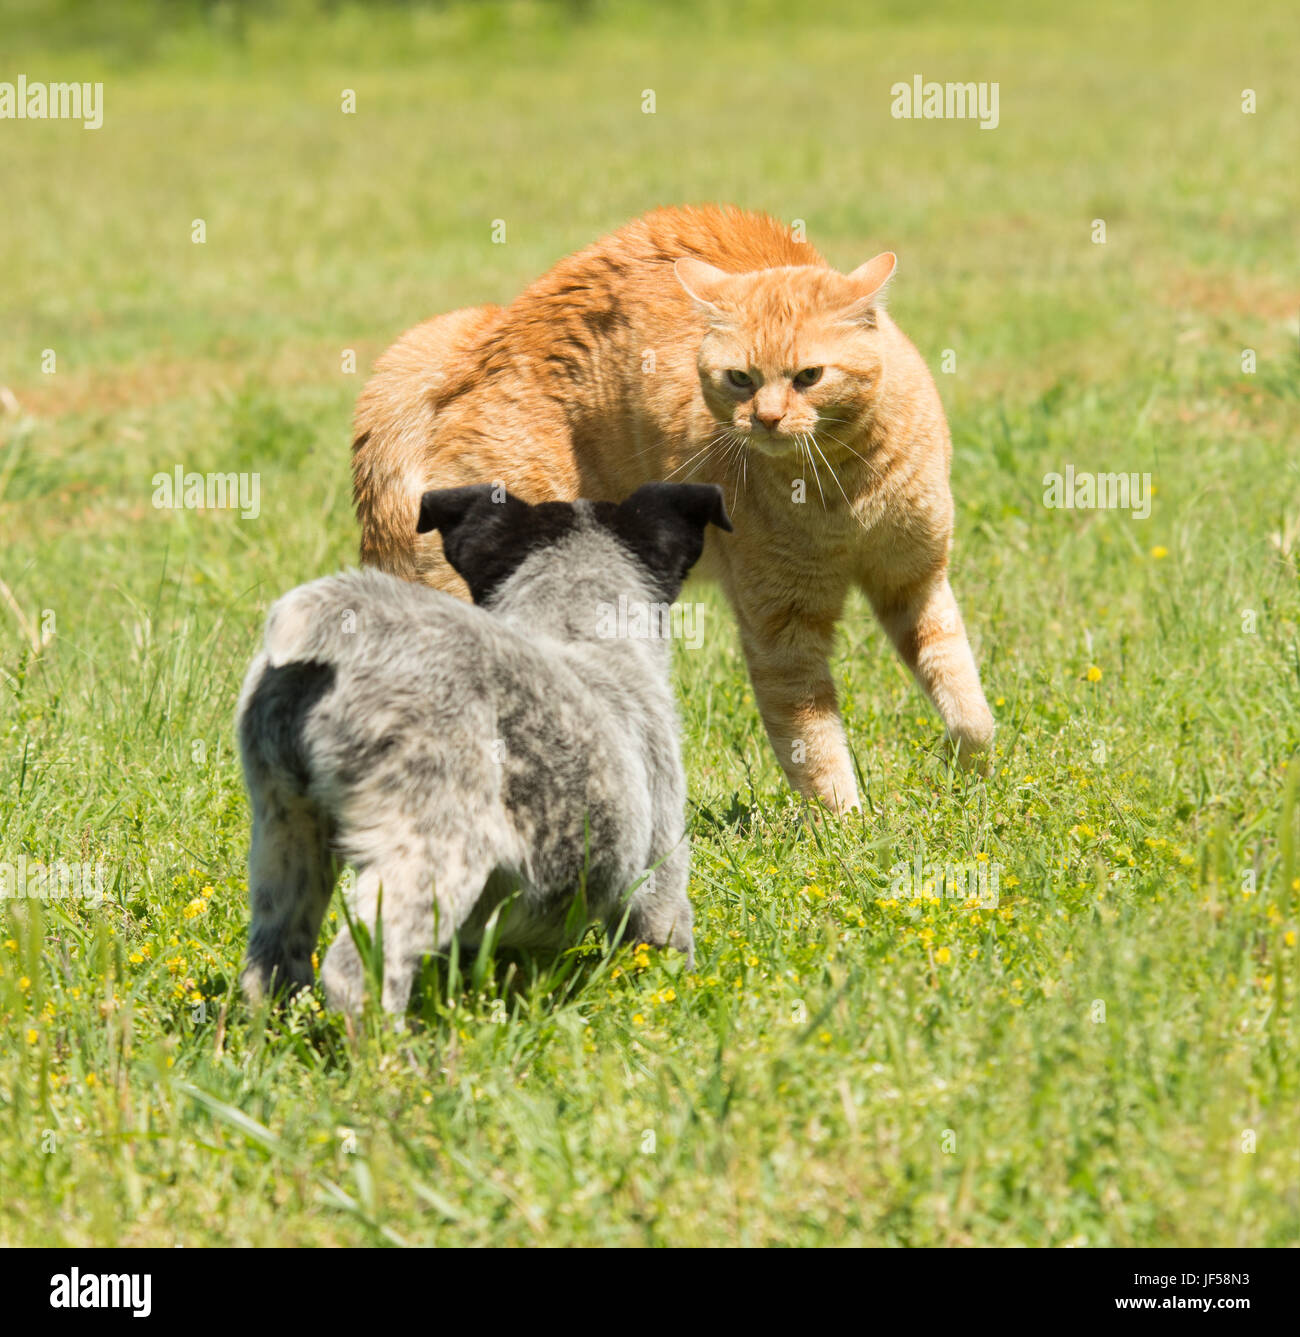 Lo zenzero tabby cat raccontando un cucciolo di back off senza mezzi termini Foto Stock